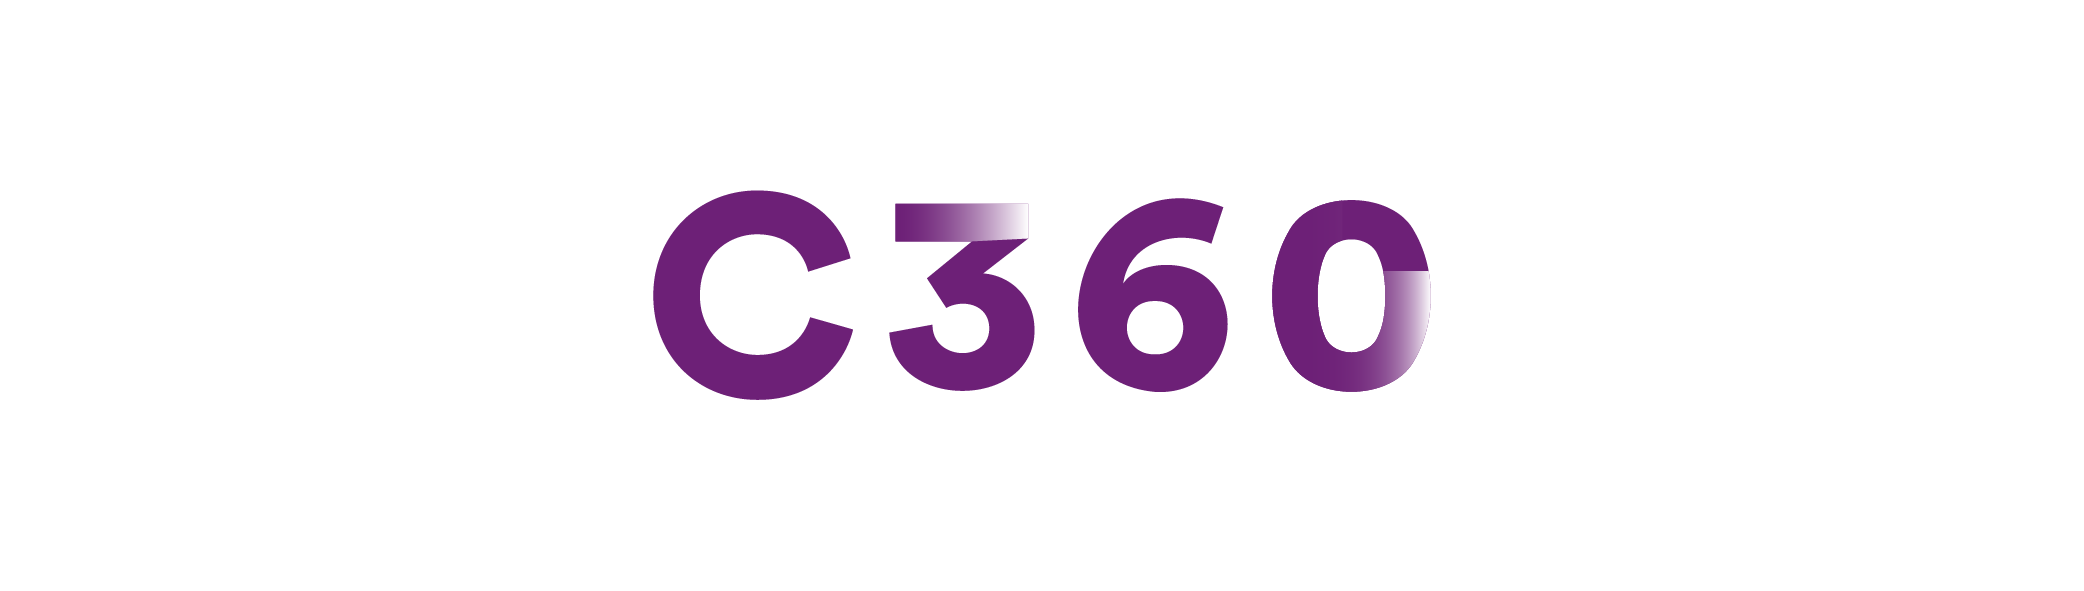 C360-portfolio